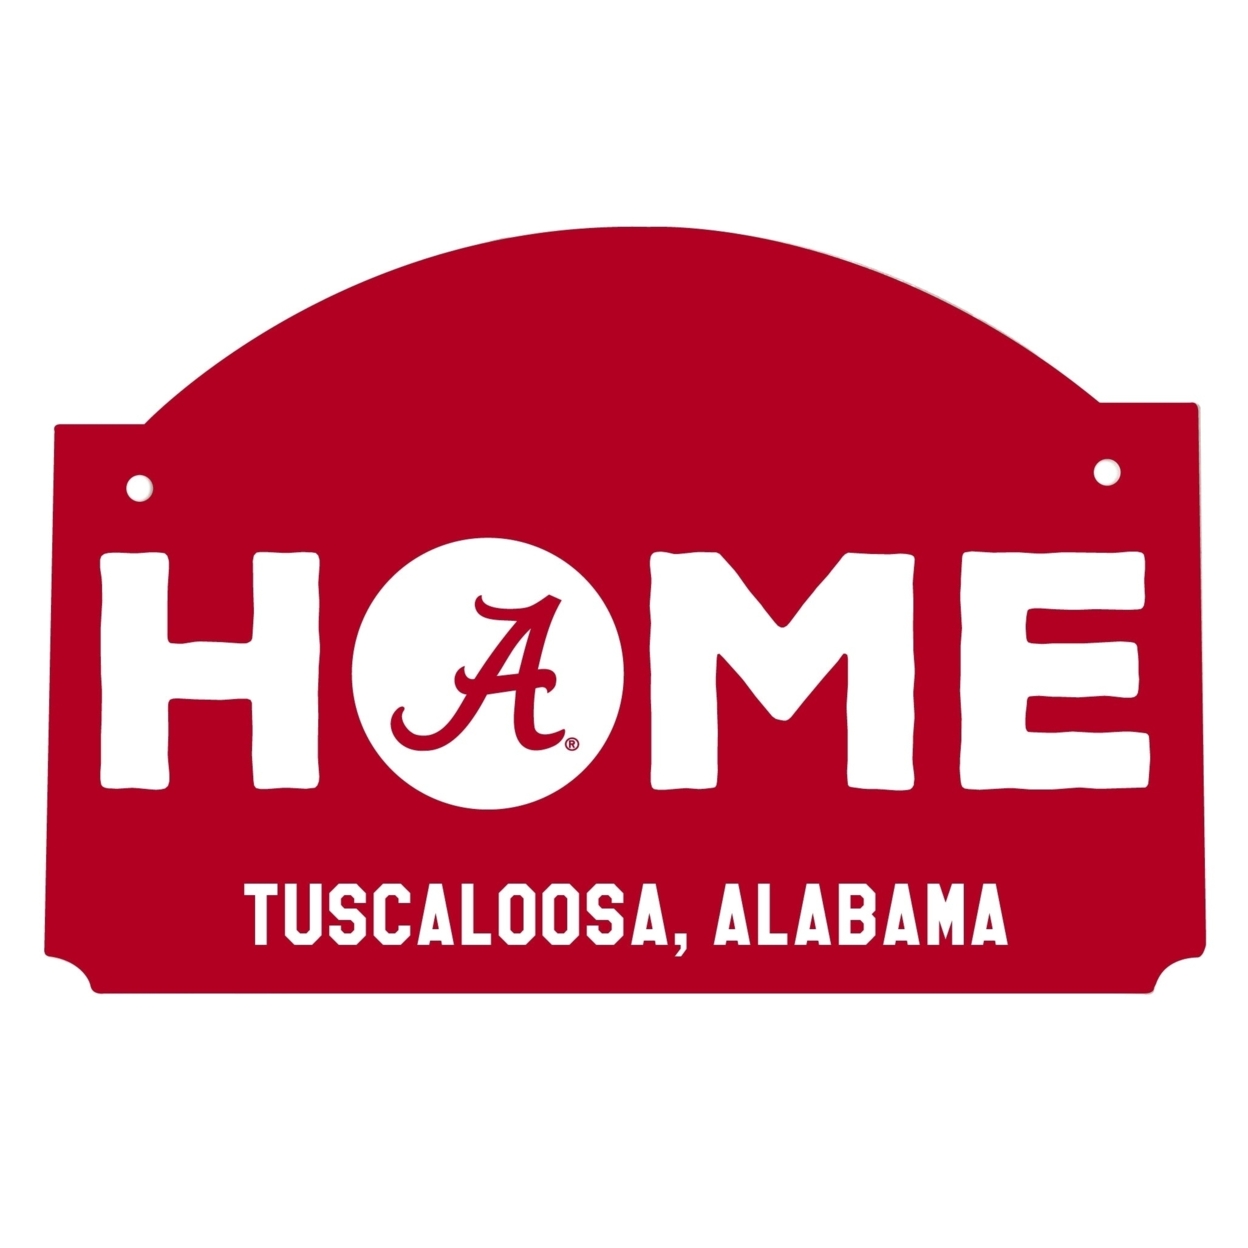 Alabama Crimson Tide Wood Sign With String